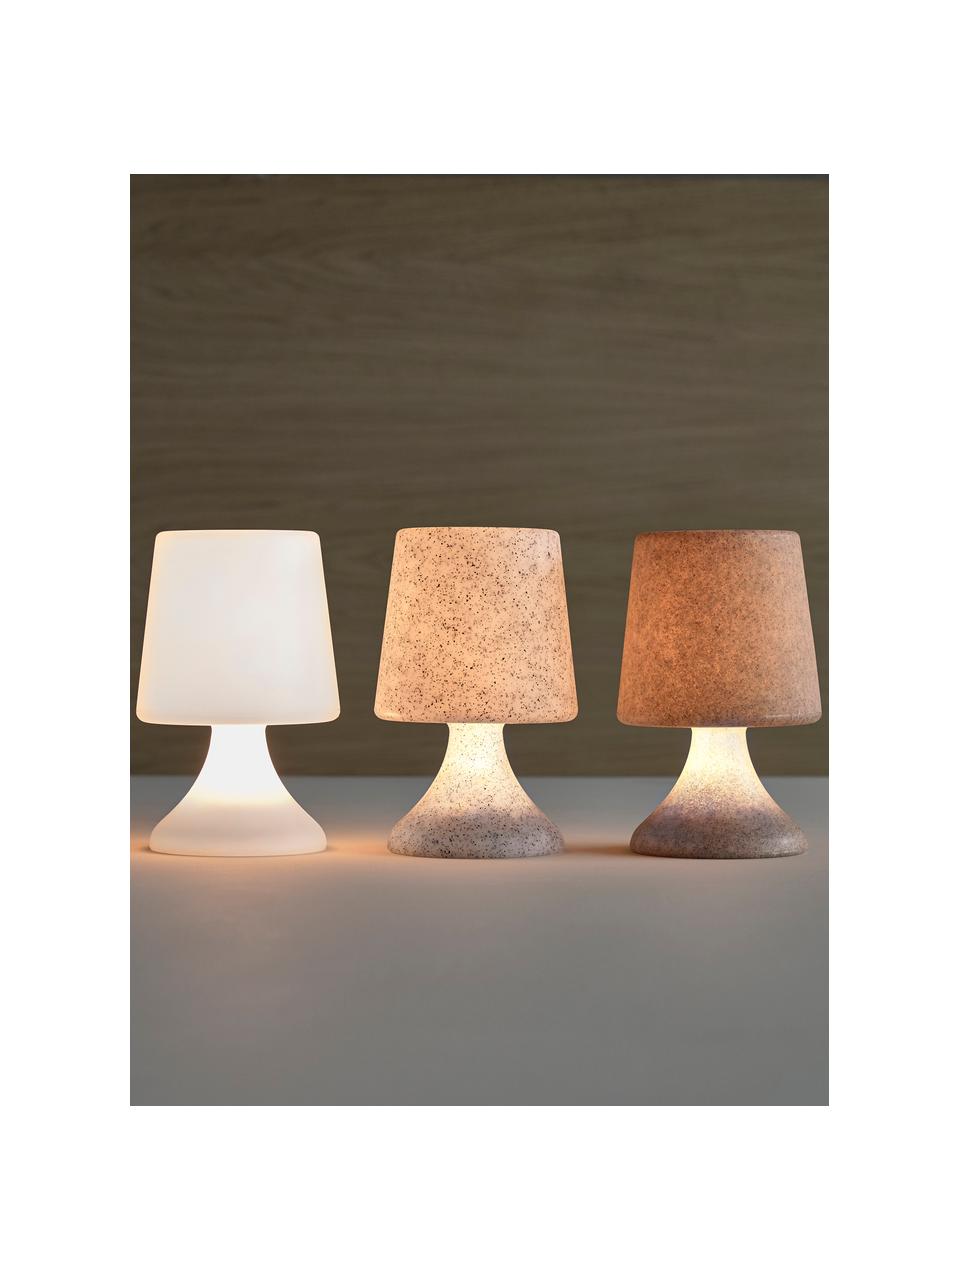 Mobile dimmbare LED-Außentischlampe Midnat mit Fernbedienung, Lampenschirm: Kunststoff, Lampenfuß: Kunststoff, Weiß-Grau, Ø 16 x H 26 cm